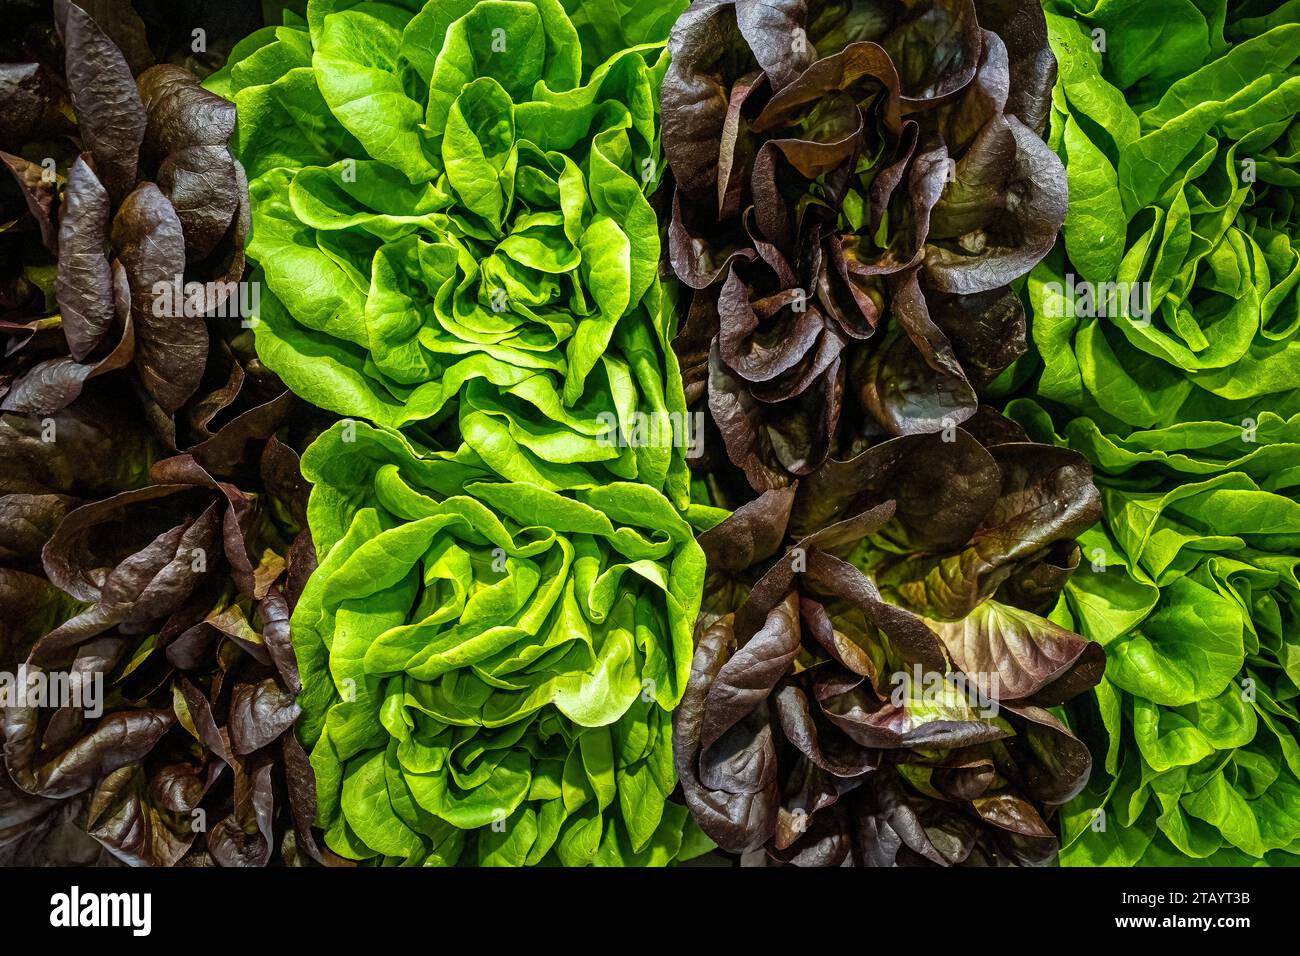 Frischer grüner und dunkelroter Salat auf dem Ausstellungsbild, aufgenommen in Spanien Stockfoto